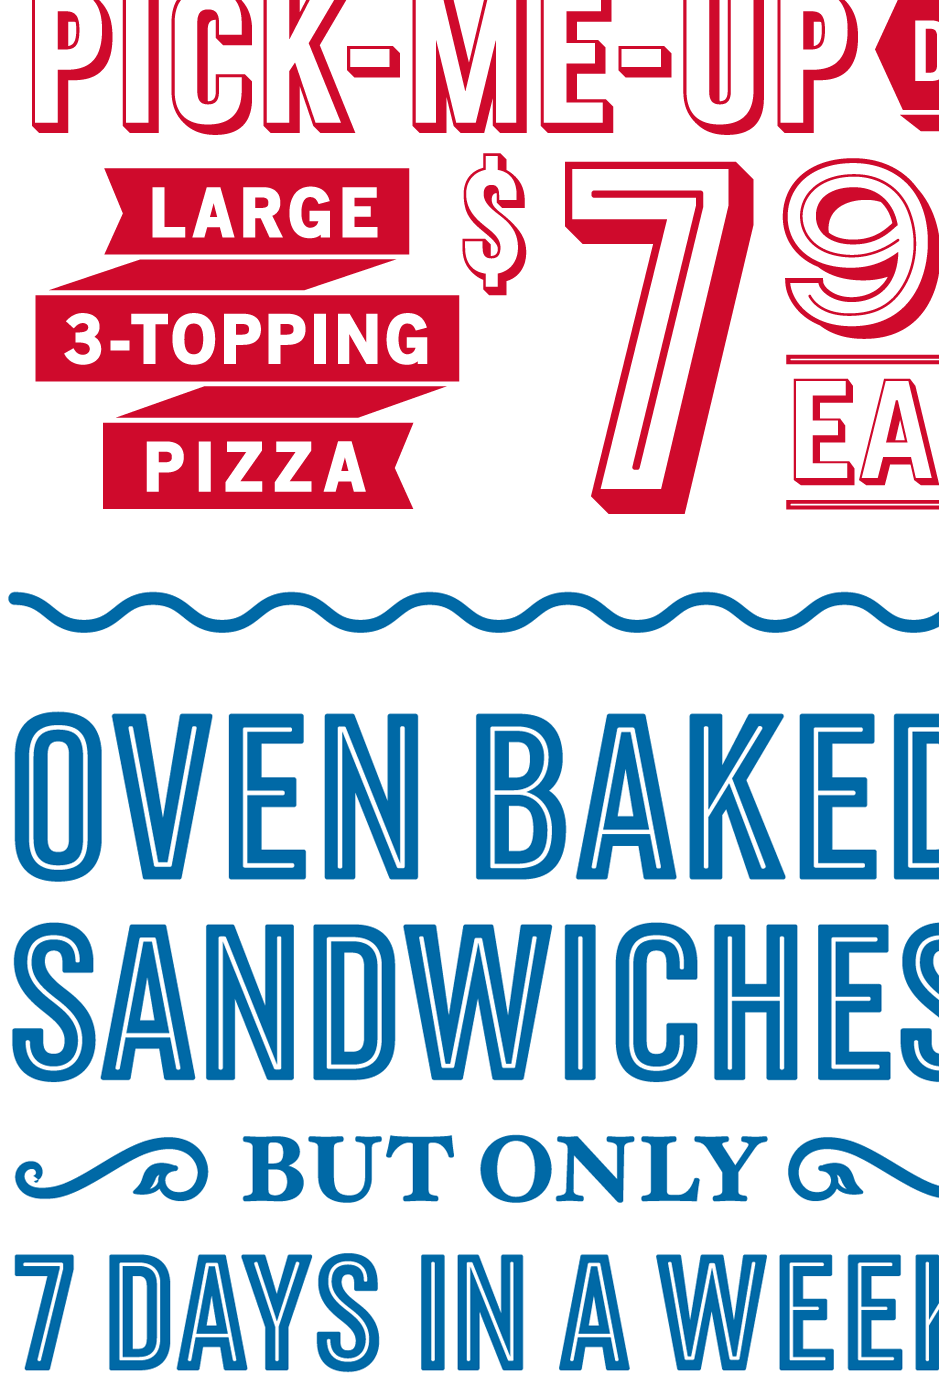 Dominos Pizza Logo Font